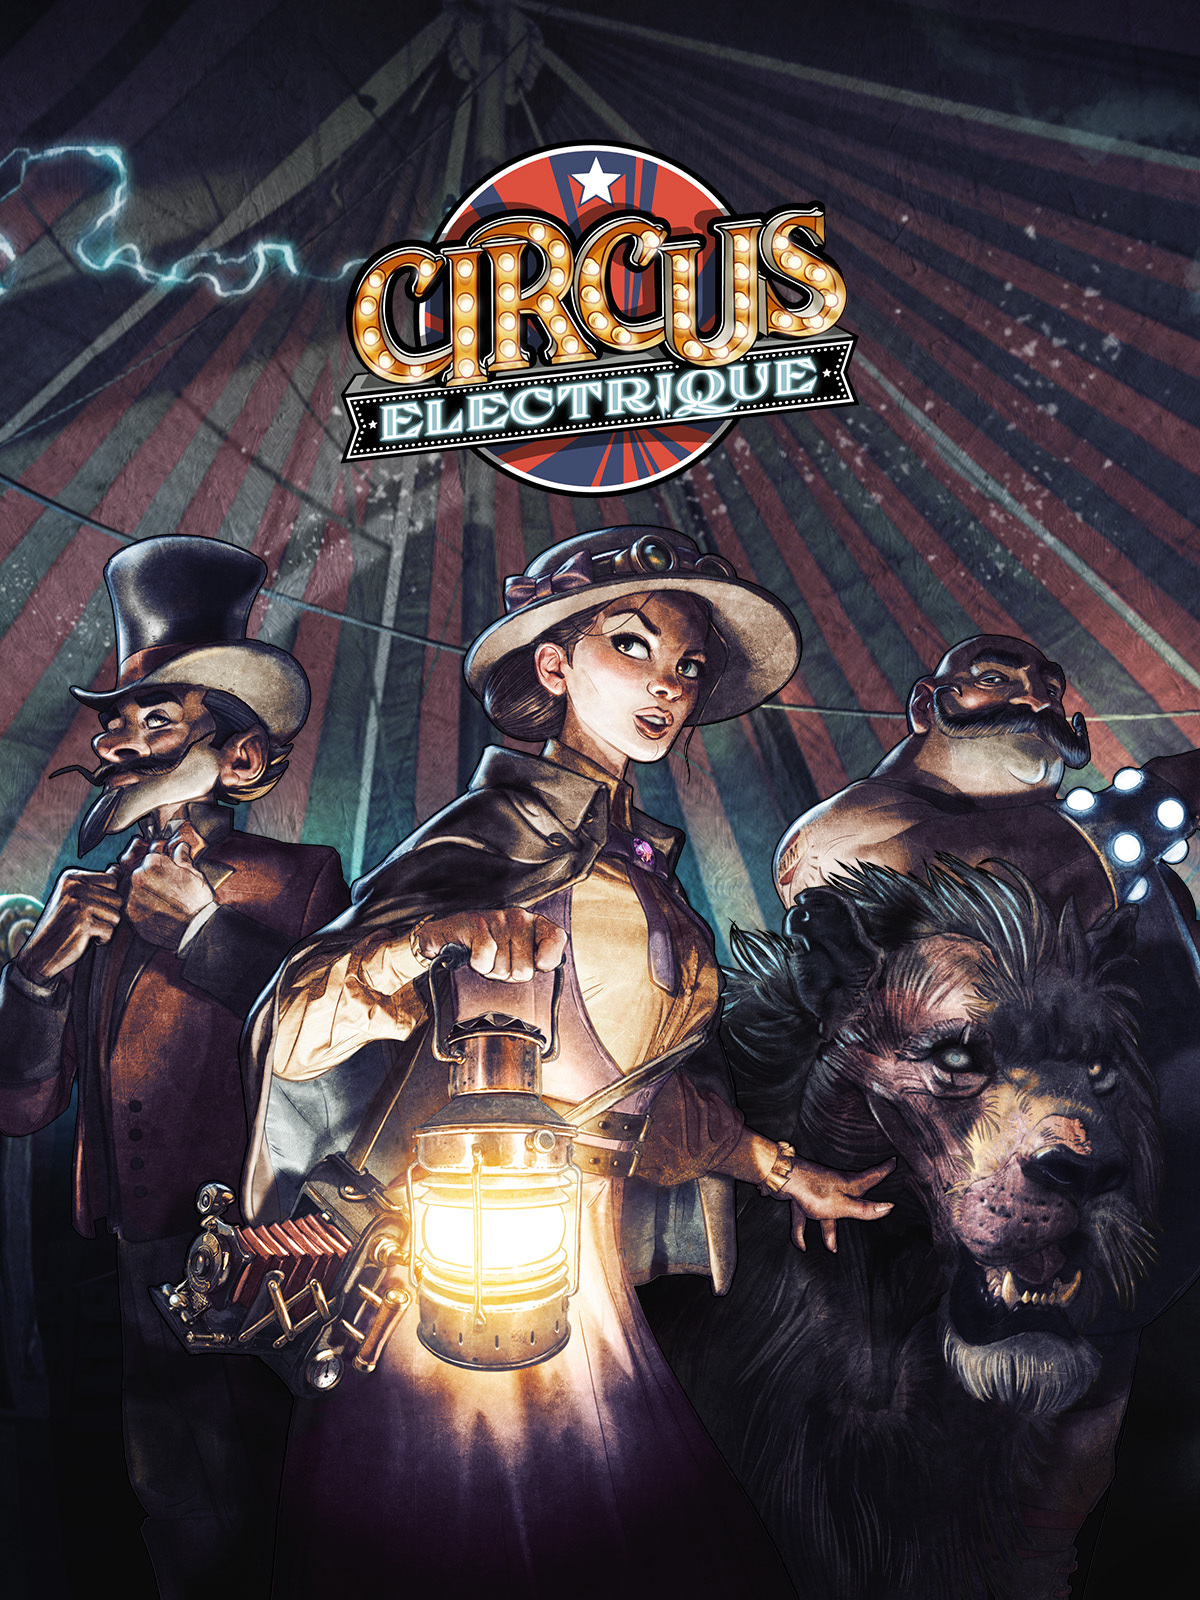 jaquette du jeu vidéo Circus Electrique